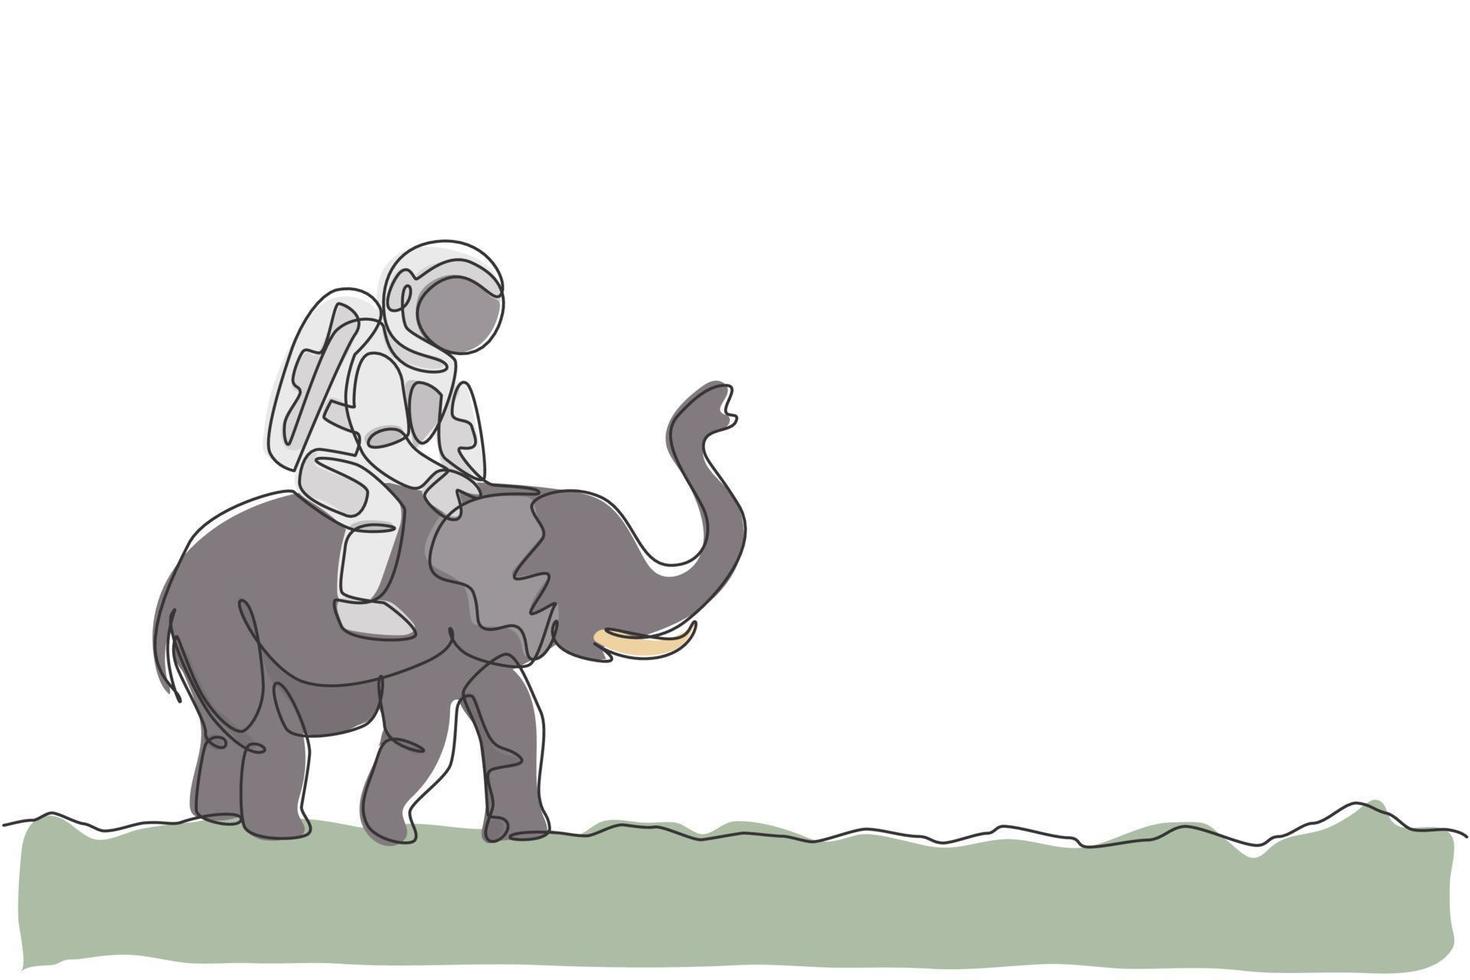 único desenho de linha contínua de cosmonauta com traje espacial montando elefante asiático, animal selvagem na superfície da lua. fantasia astronauta safari viagem conceito. ilustração em vetor desenho desenho de uma linha na moda